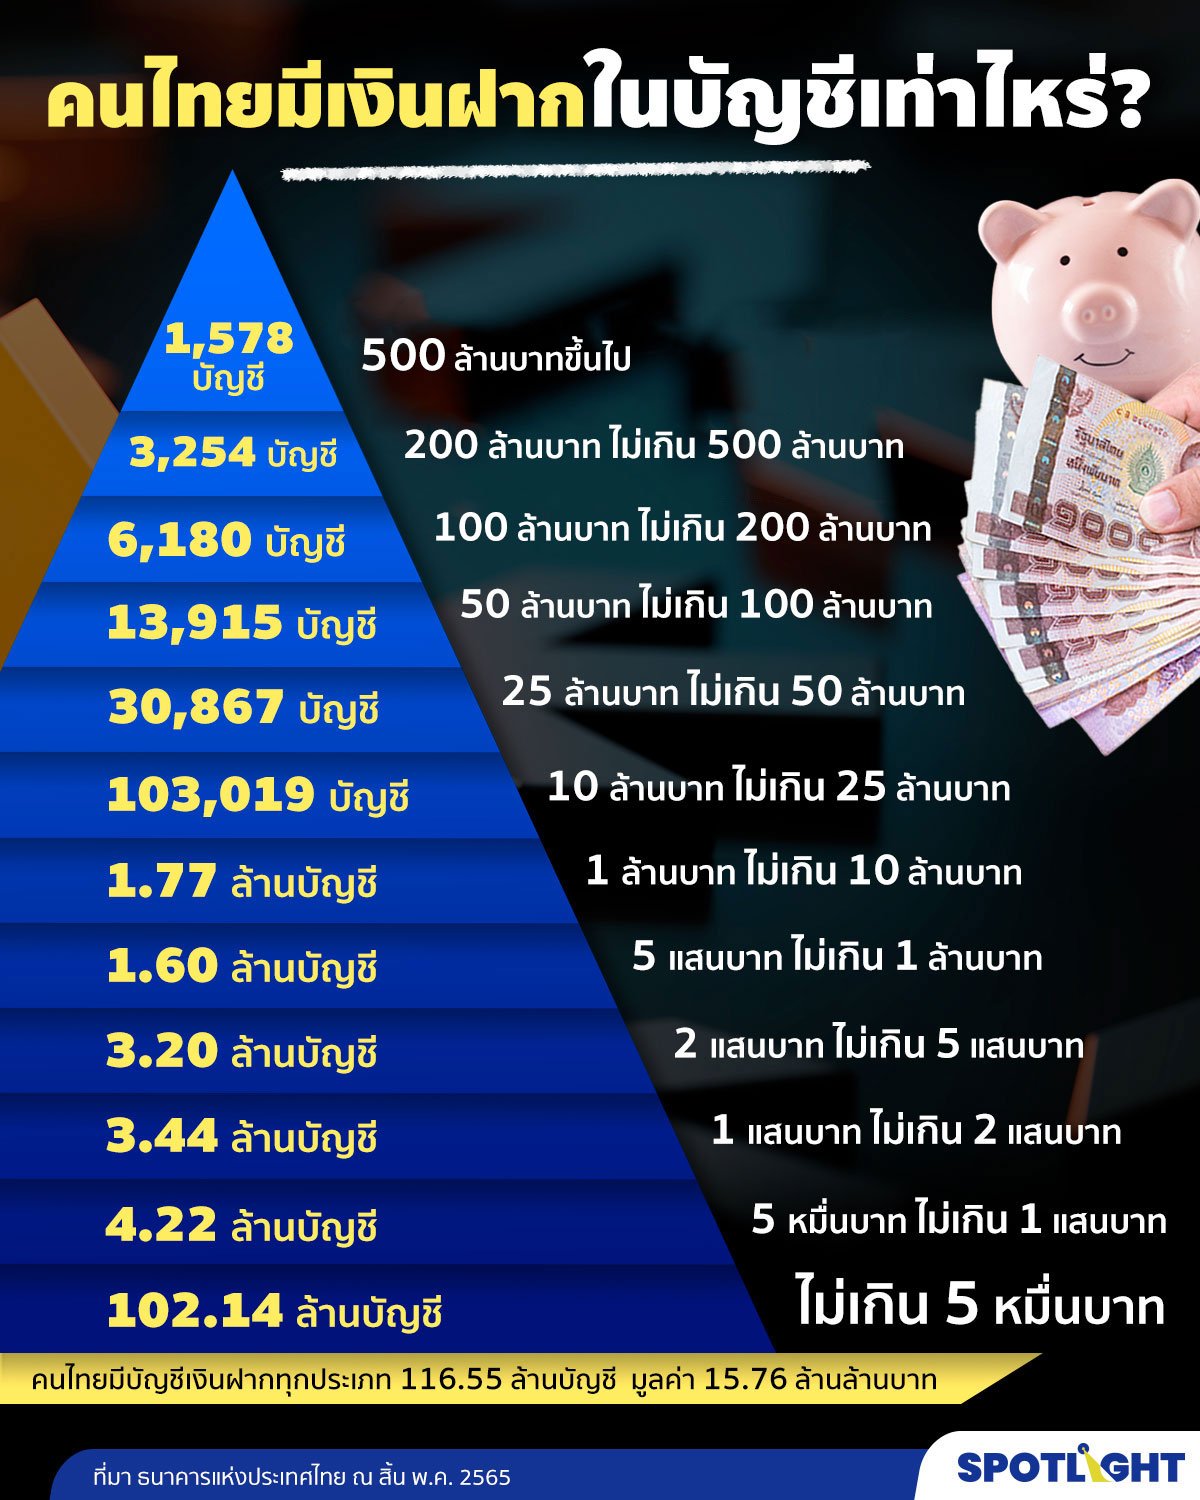 จำนวนบัญชีเงินฝากคนไทย